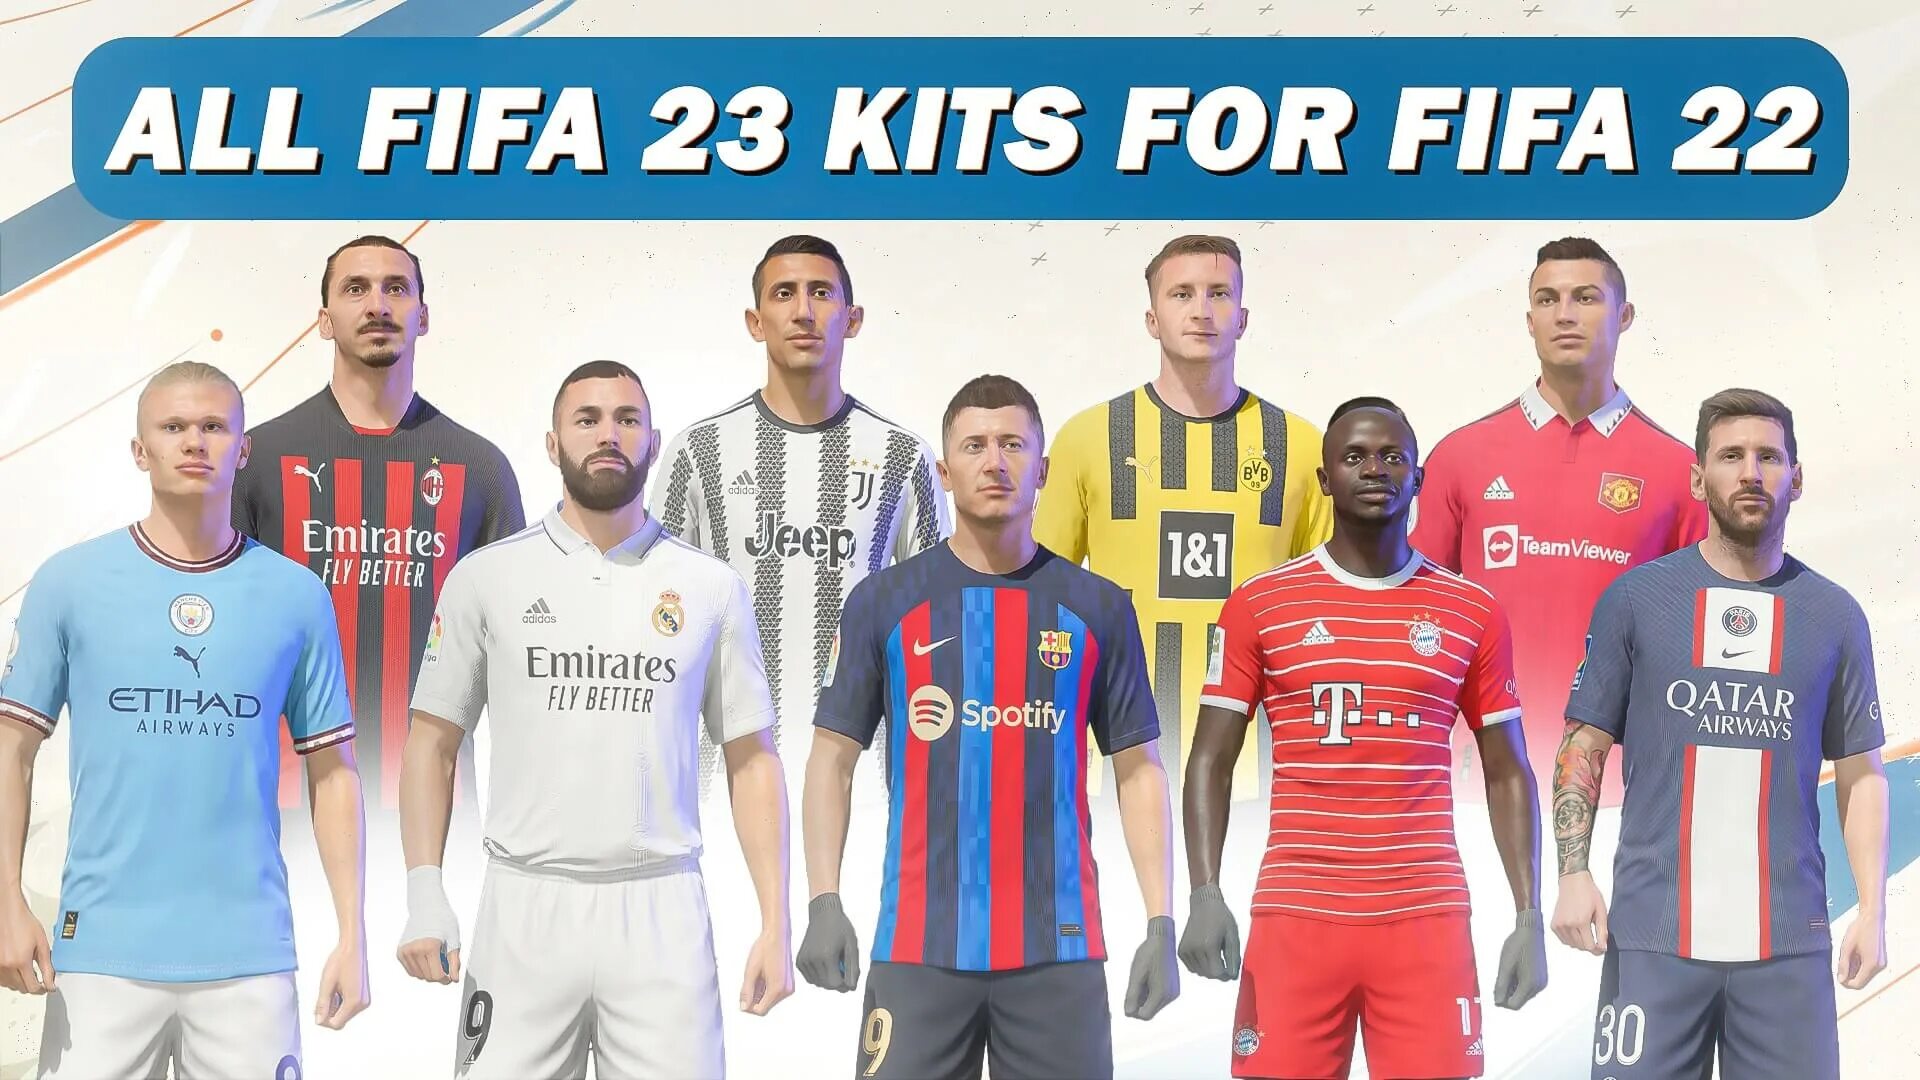 ФИФА Kits. ФК Ричмонд ФИФА 23. FIFA 23 Kit. FIFA 23 формы команд.